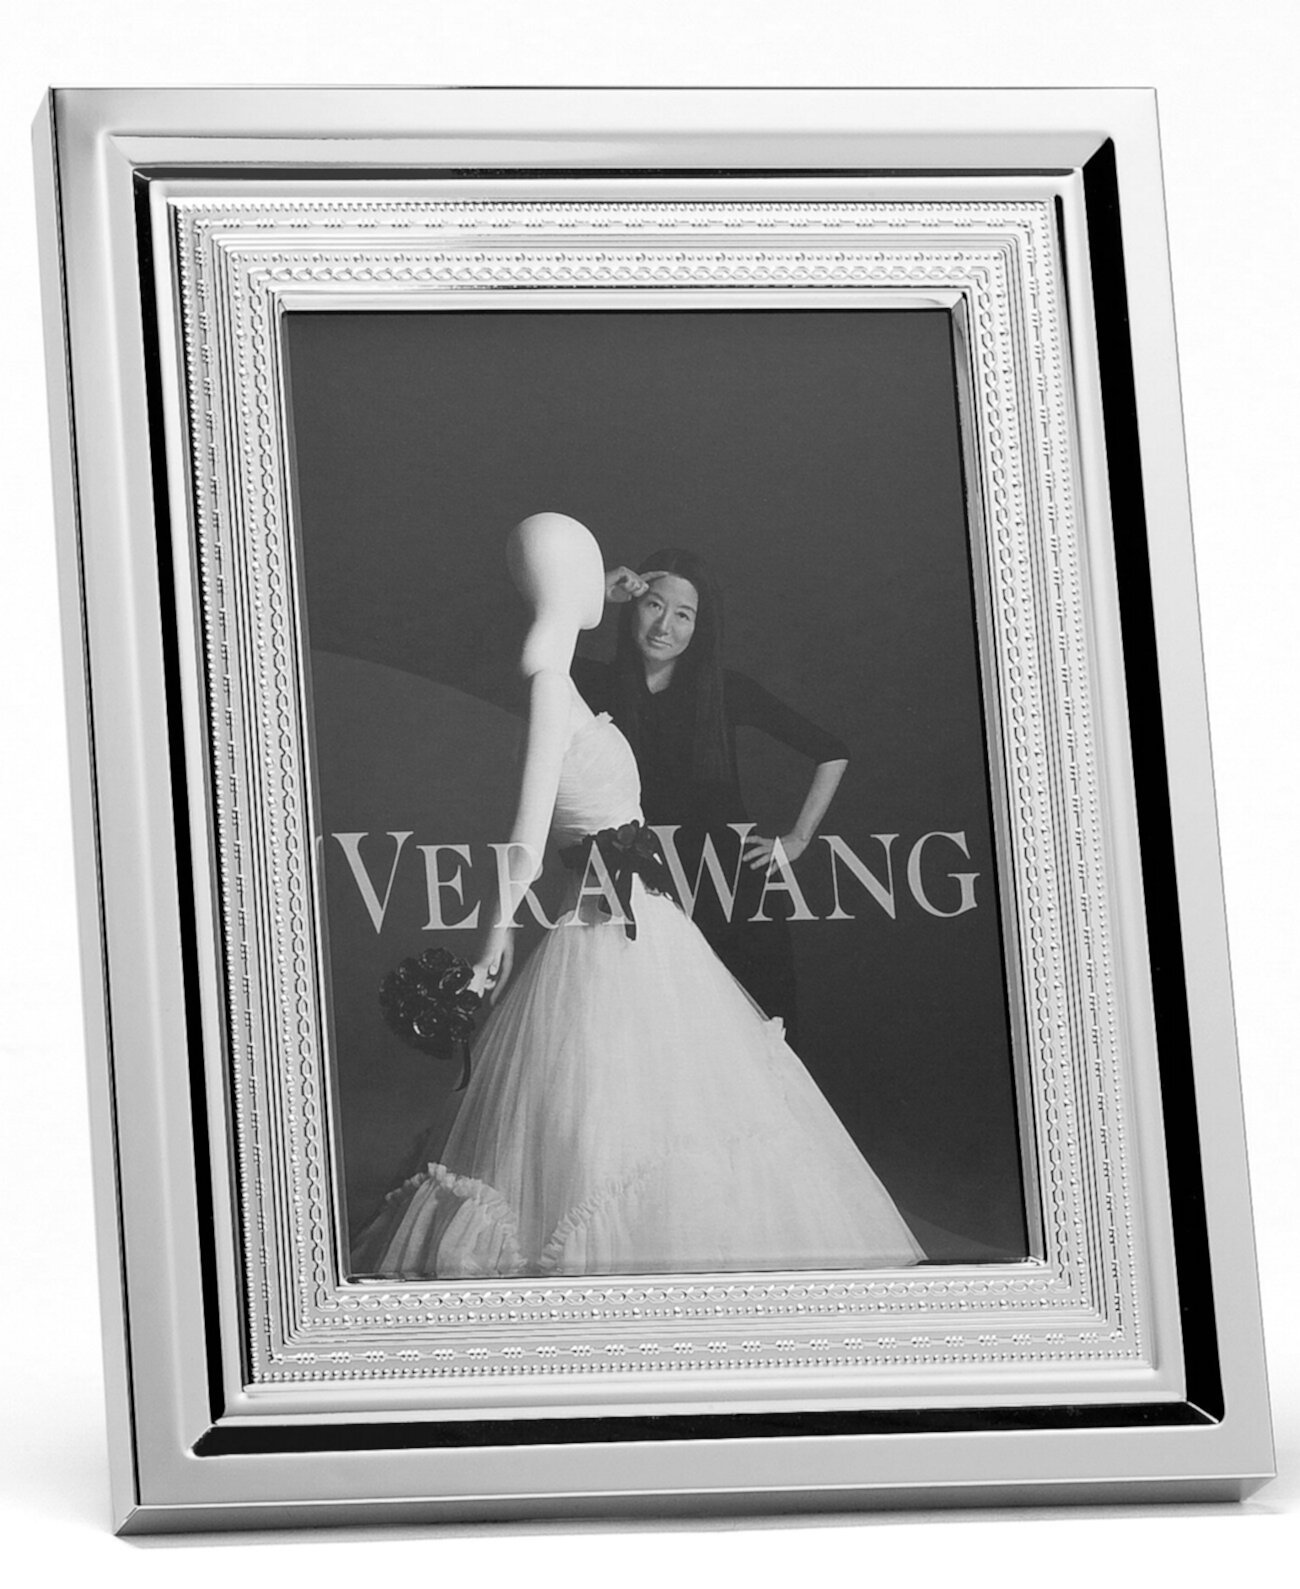 С любовью рамка для фотографий размером 5 x 7 дюймов Vera Wang Wedgwood